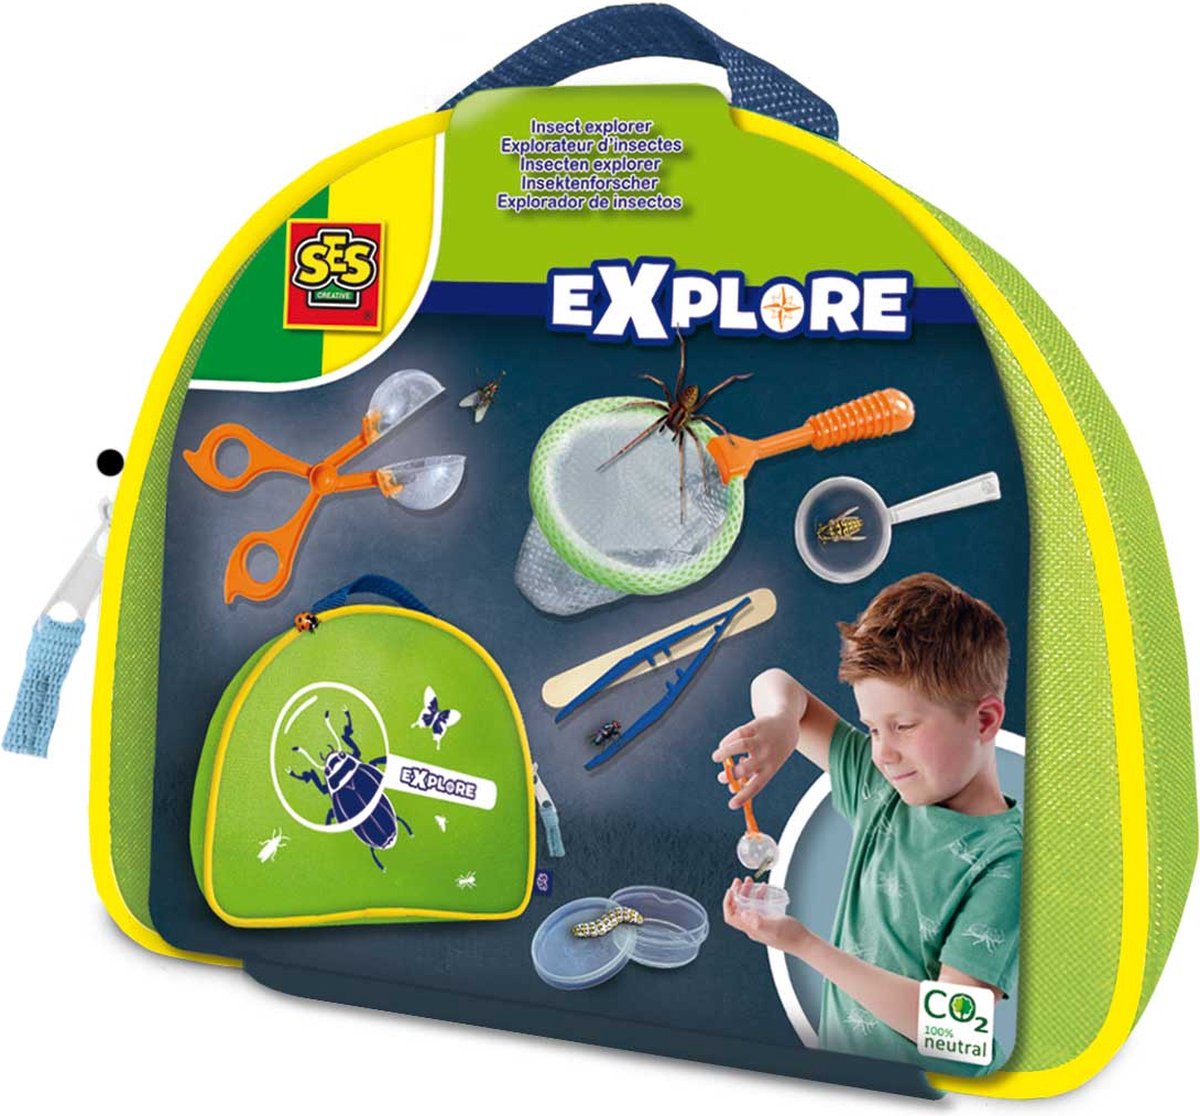 SES - Explore - Insecten explorer - handige koffer met tang, vergrootglas, pincet, bakje en speurkaart - SES